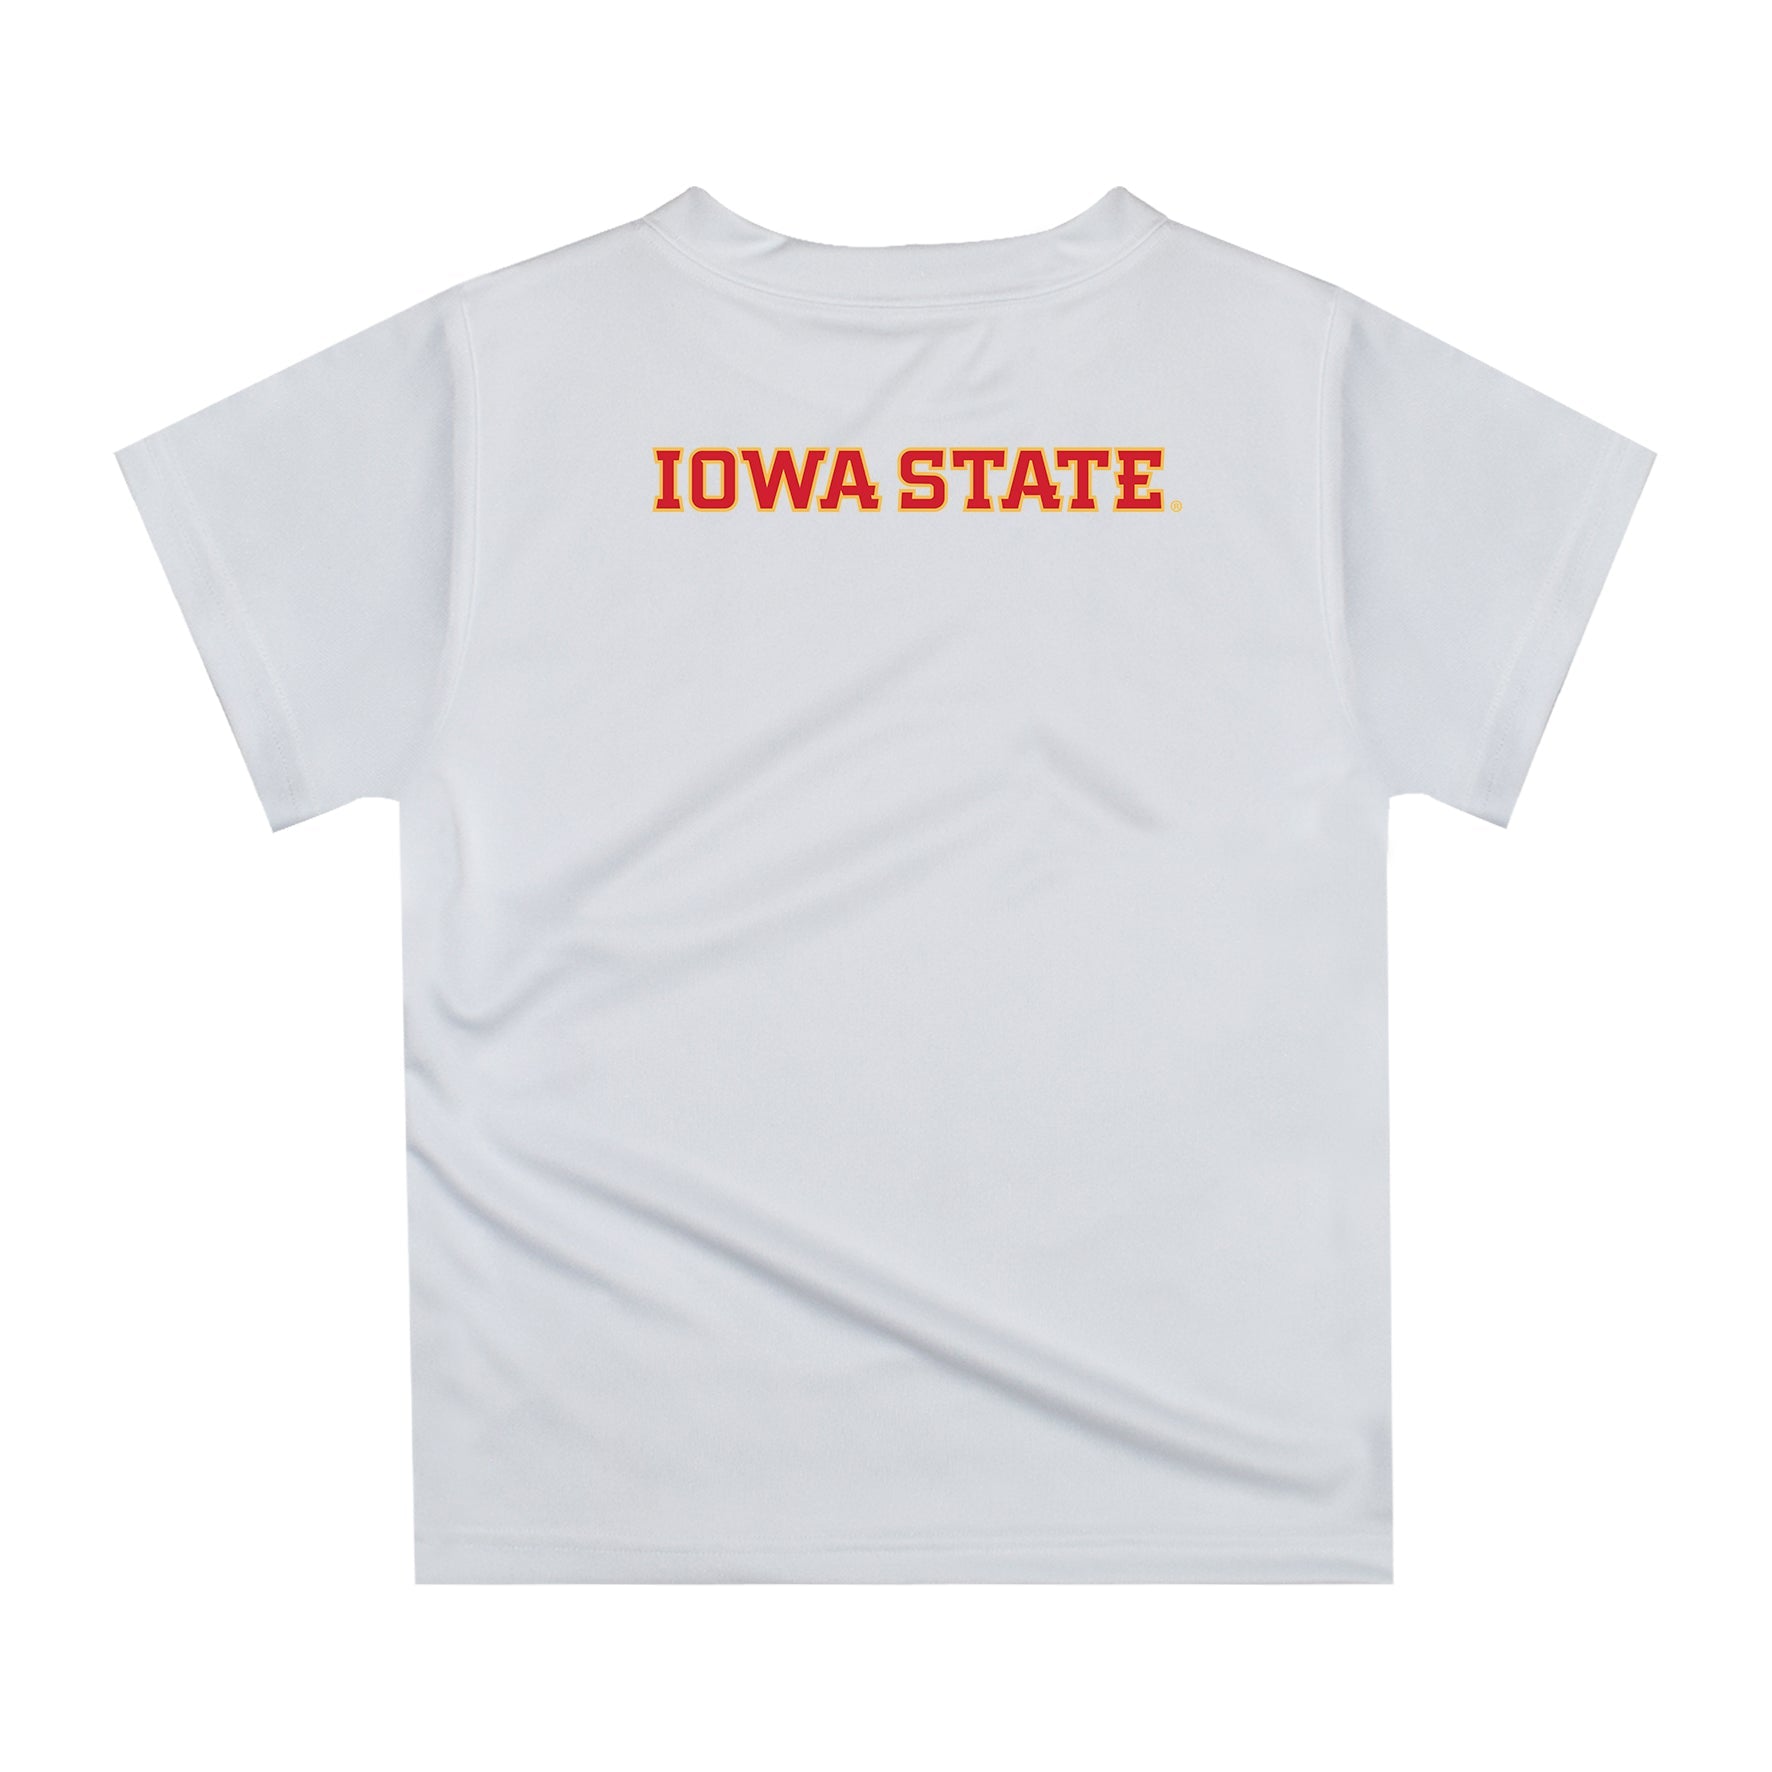 Iowa State Cyclones ISU Original Dripping Football Helmet White T-Shirt by Vive La Fete